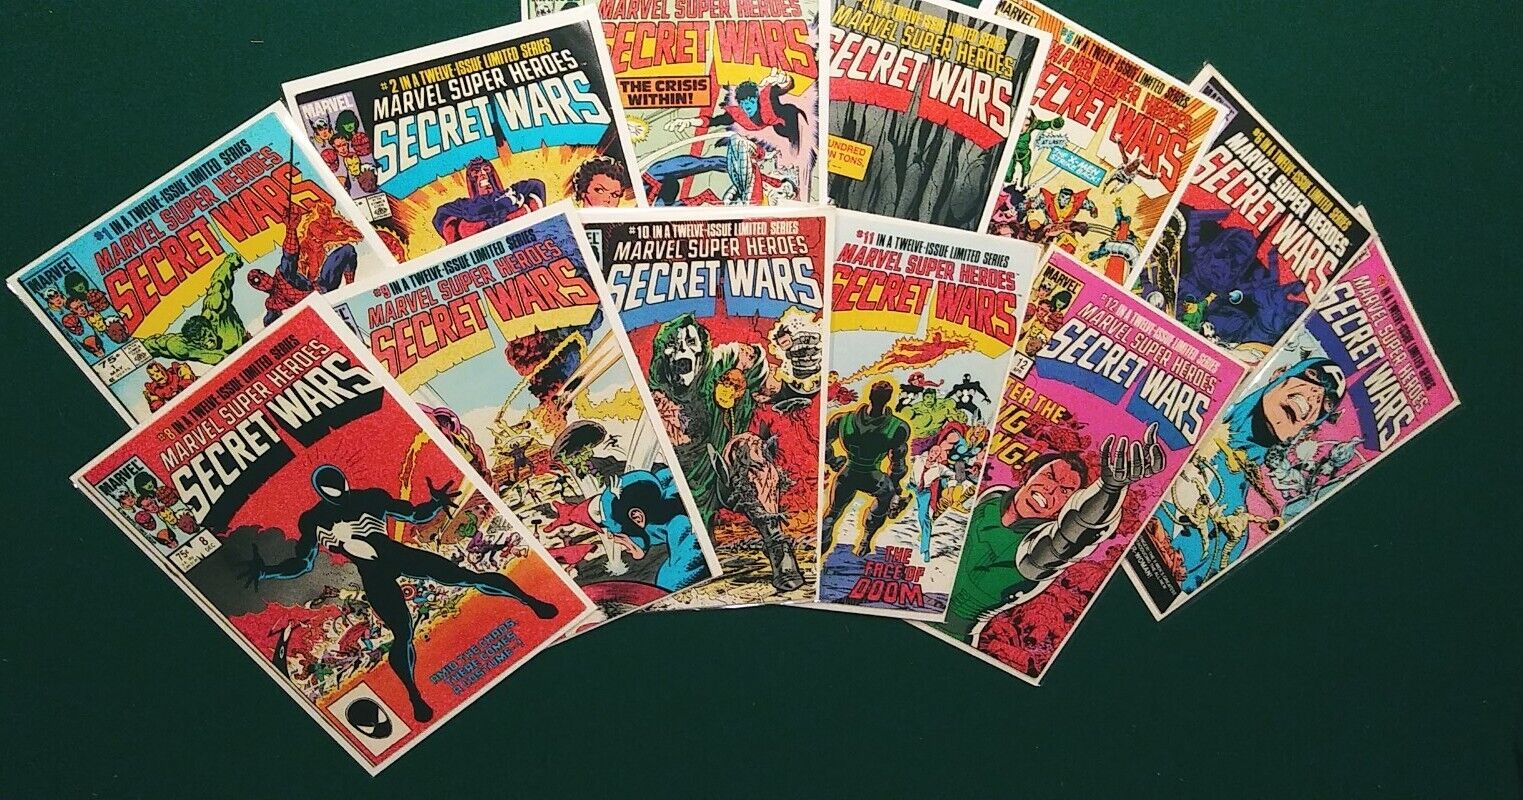 MARVEL SUPER HEROES SECRET WARS (1984) 1-12 + Secret Wars II 1-9 Complete Sets